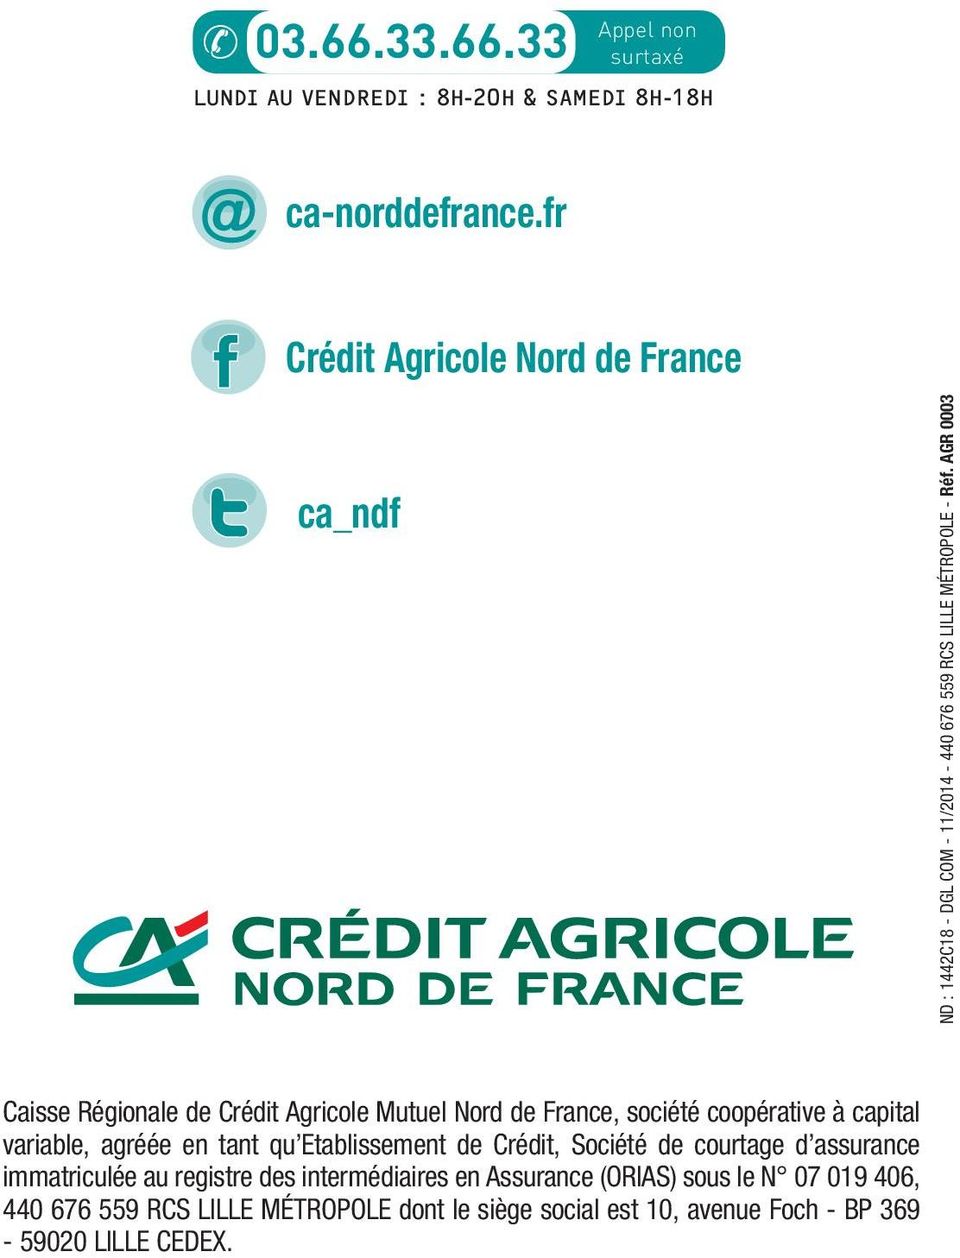 AGR 0003 Caisse Régionale de Crédit Agricole Mutuel Nord de France, société coopérative à capital variable, agréée en tant qu Etablissement de